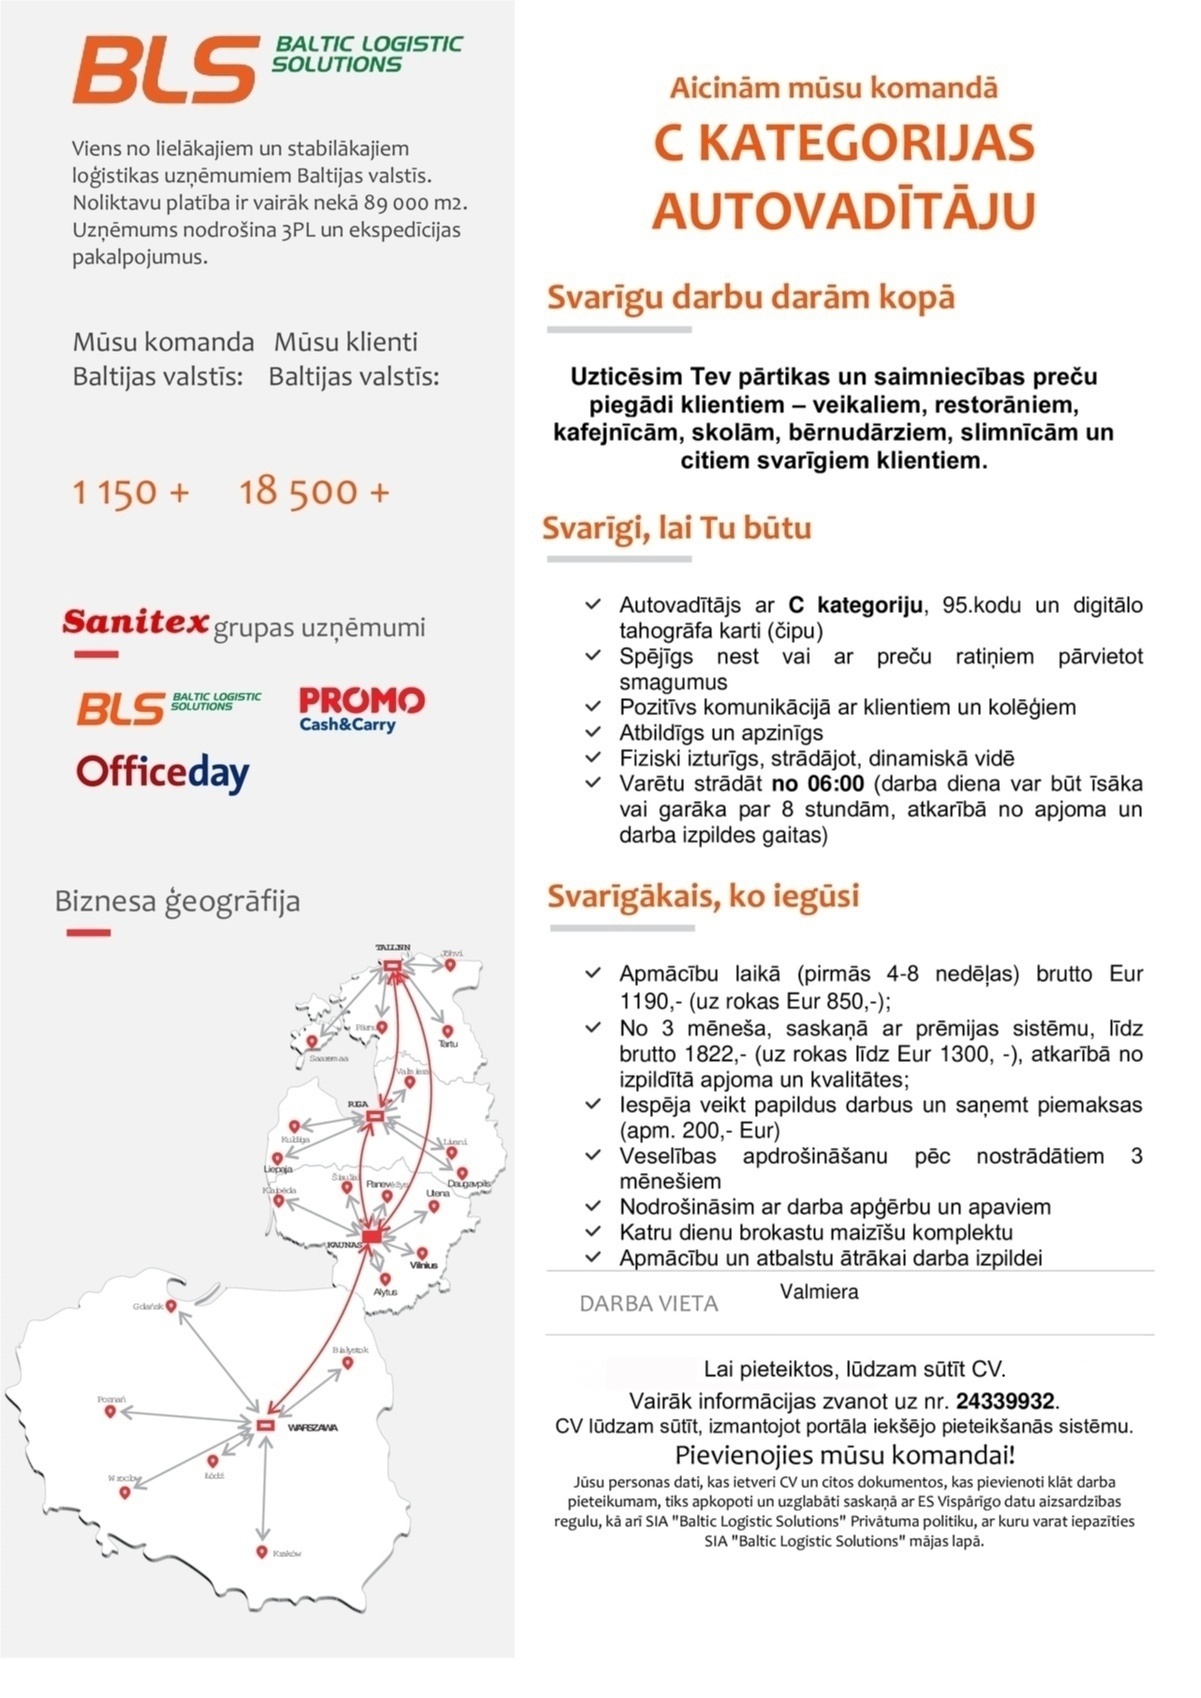 Baltic Logistic Solutions C kategorijas autovadītājs/-a Valmierā